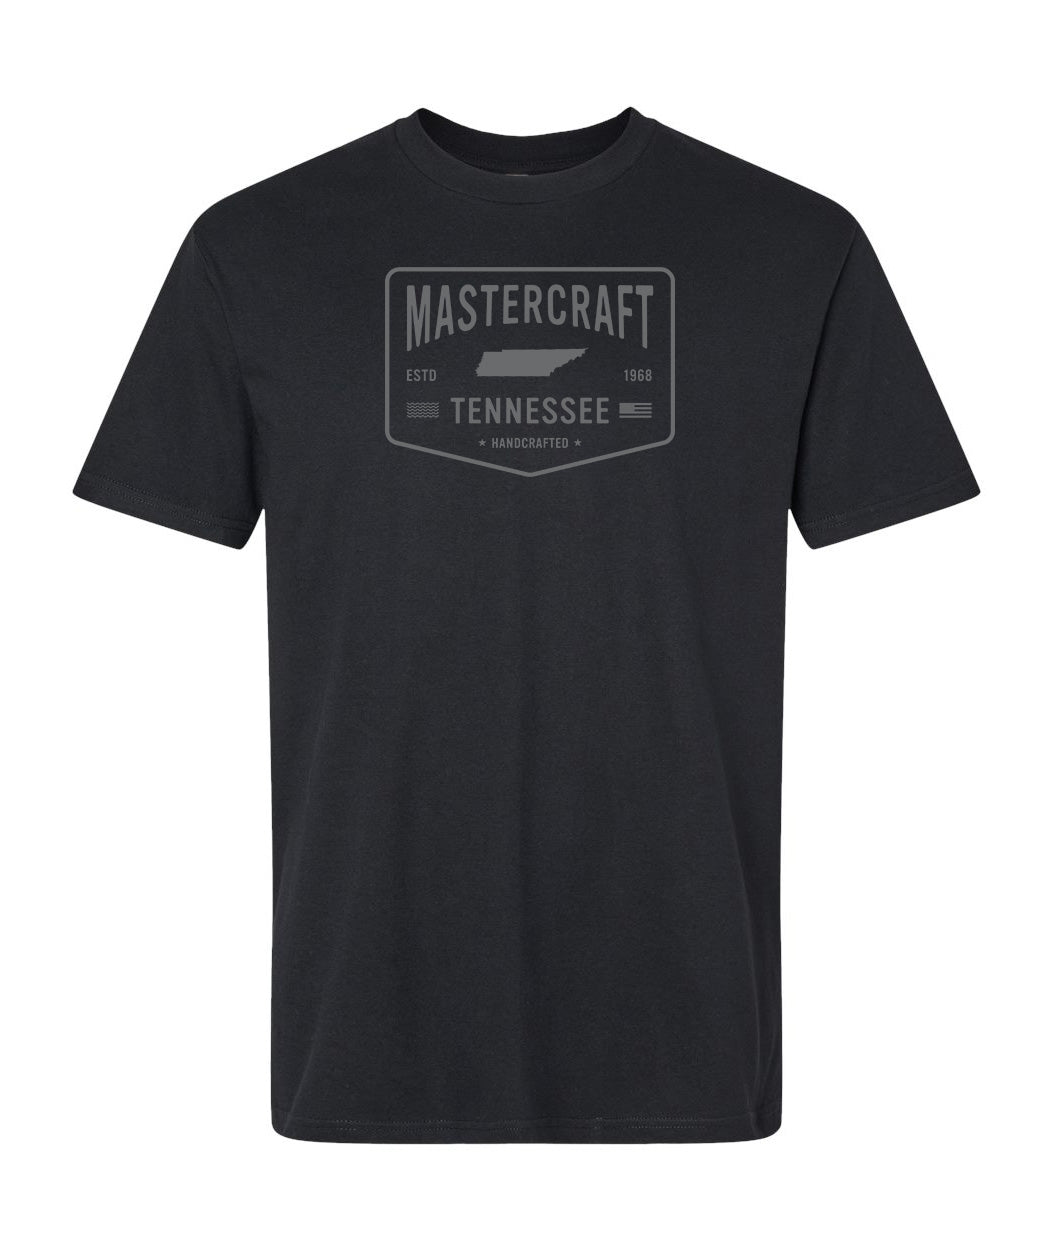 MasterCraft Handcrafted Men's T-Shirt